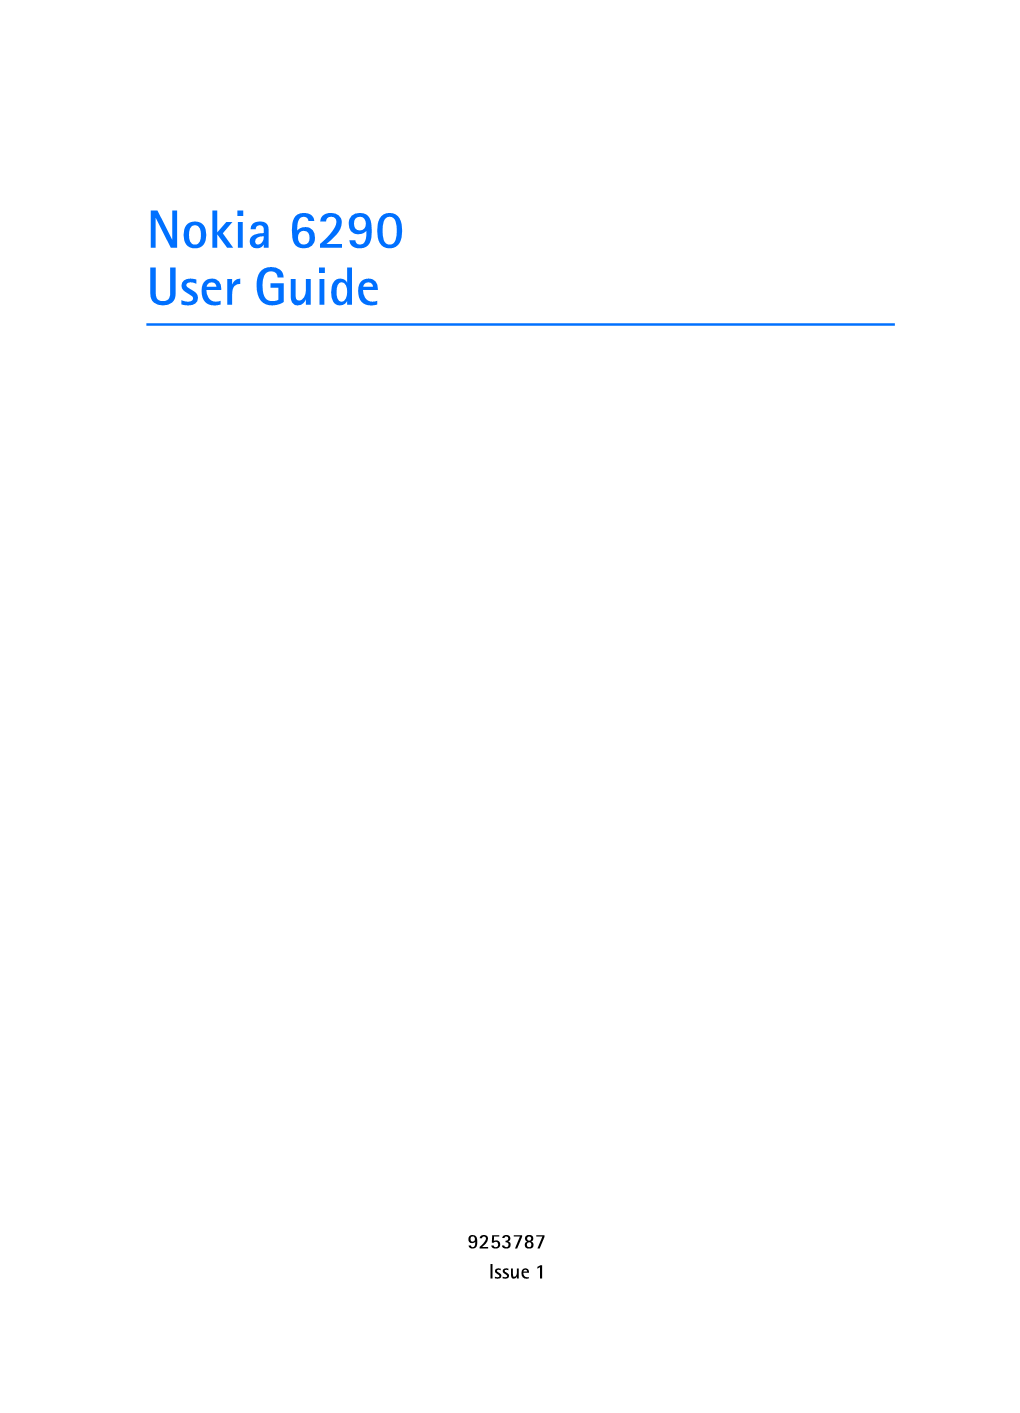 Nokia 6290 Manual